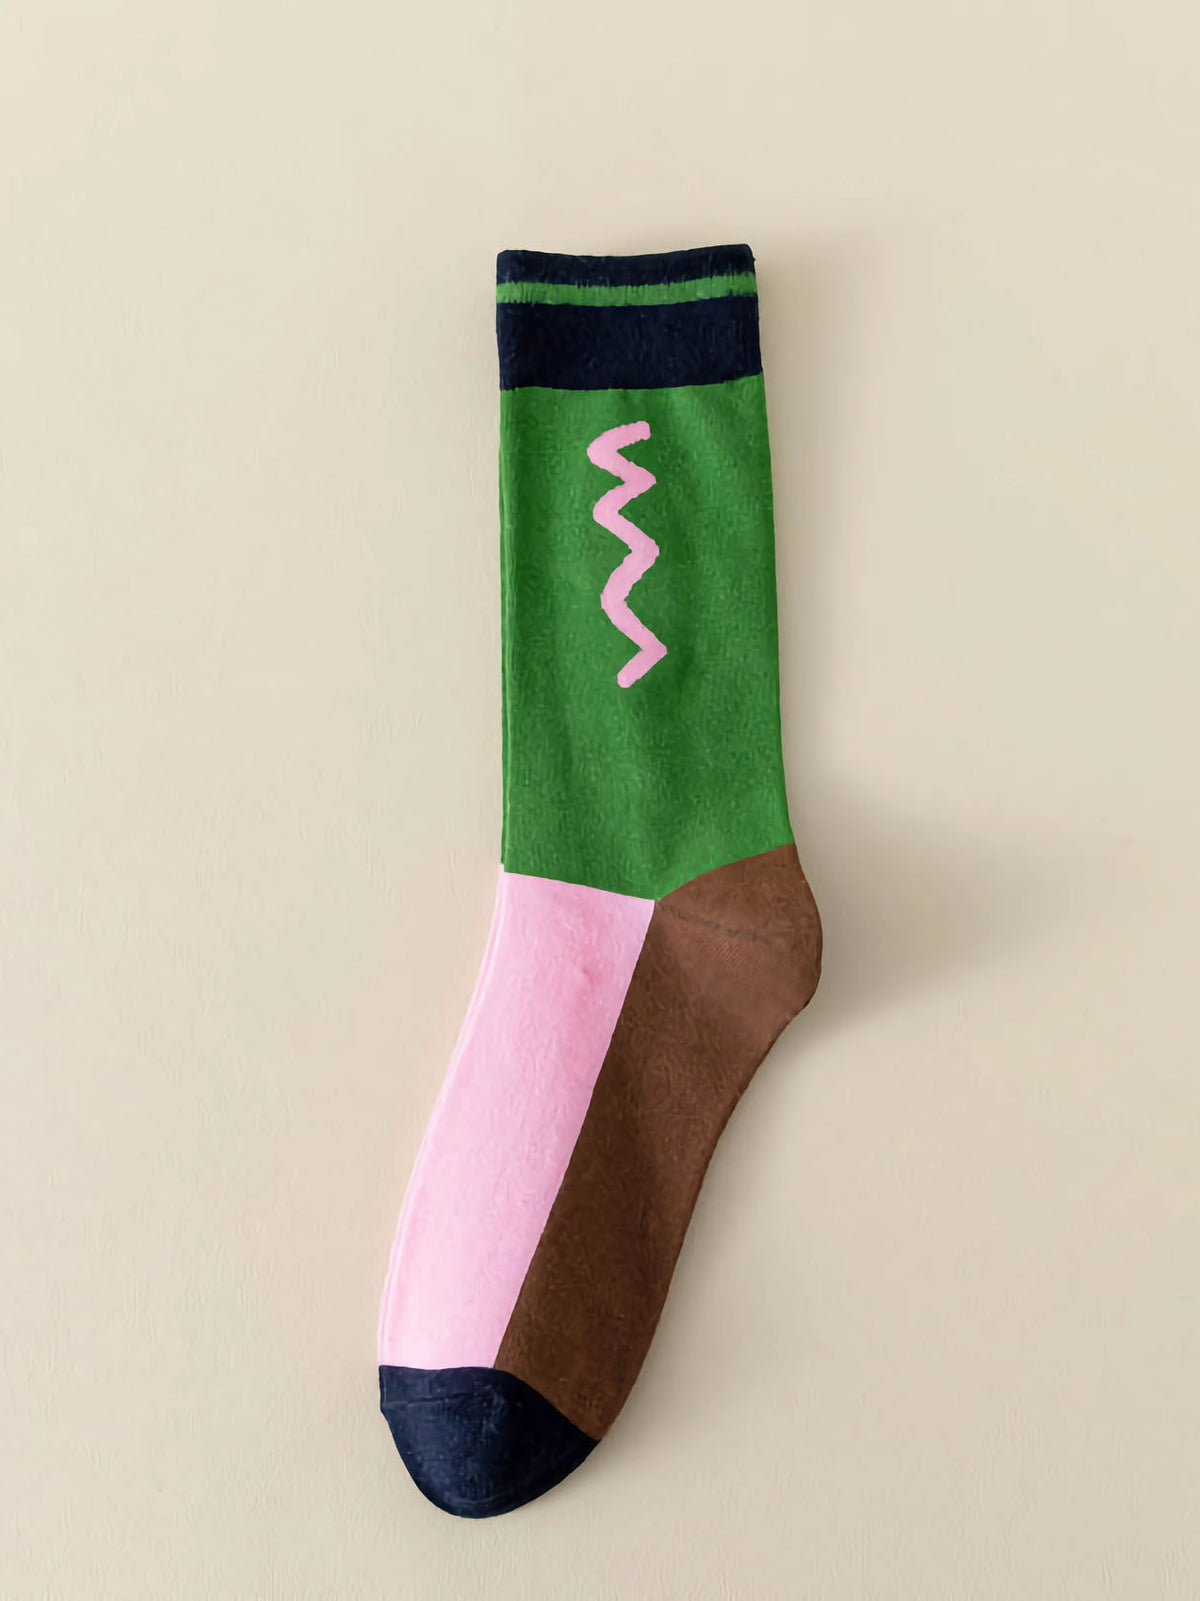 Socken in grün, rosa, dunkelblau, braun mit Muster